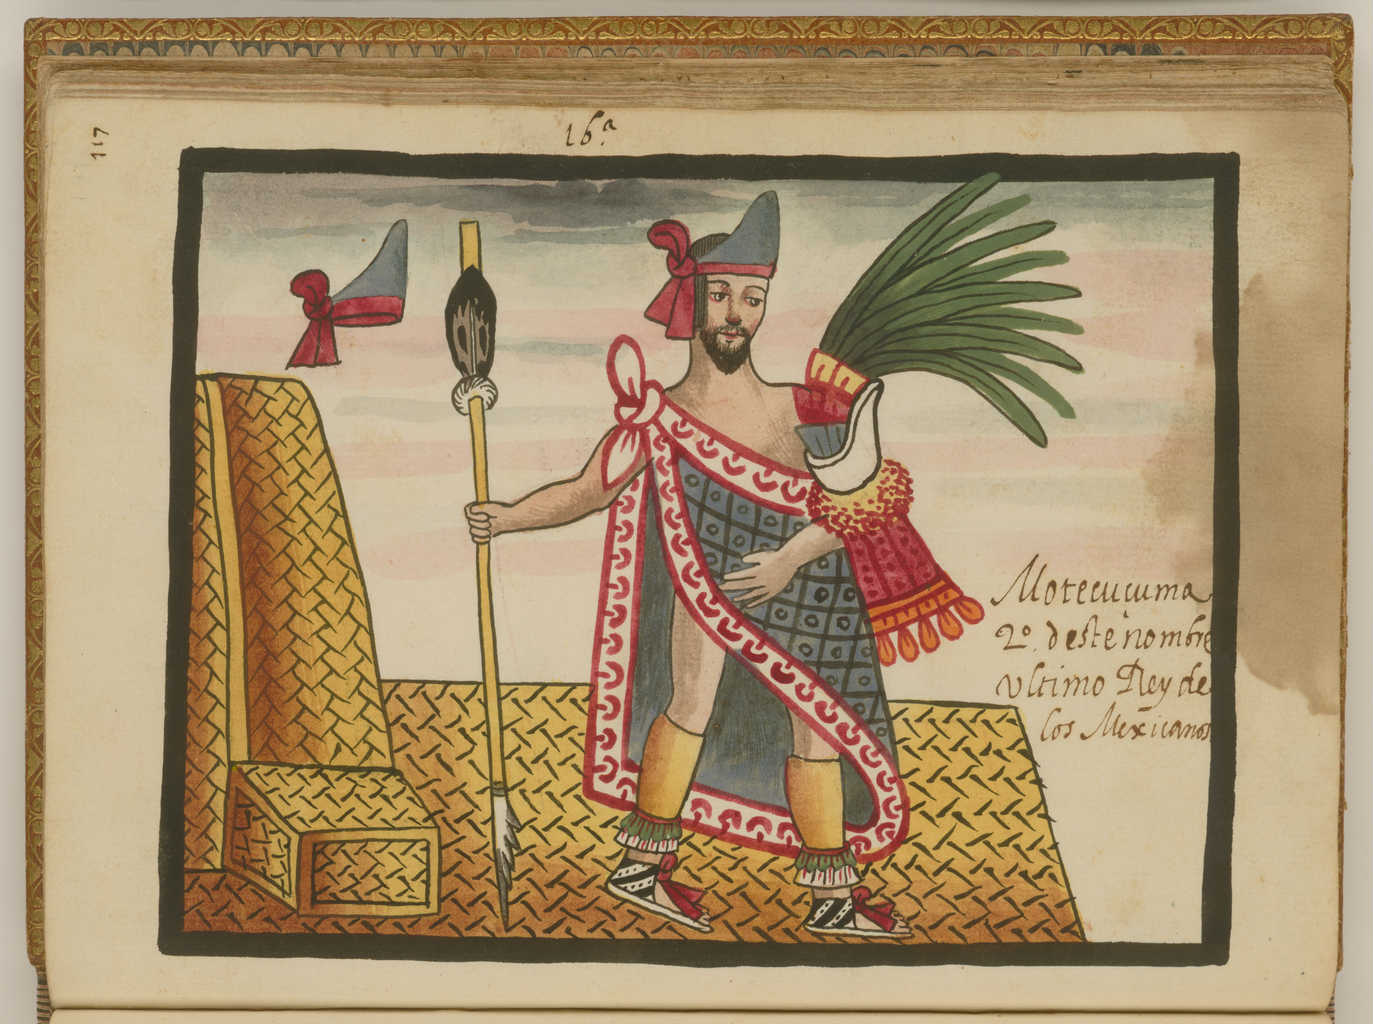 Ilustracion-emperador-azteca-moctezuma-por-espanoles-durante-la-conquista-de-mexico